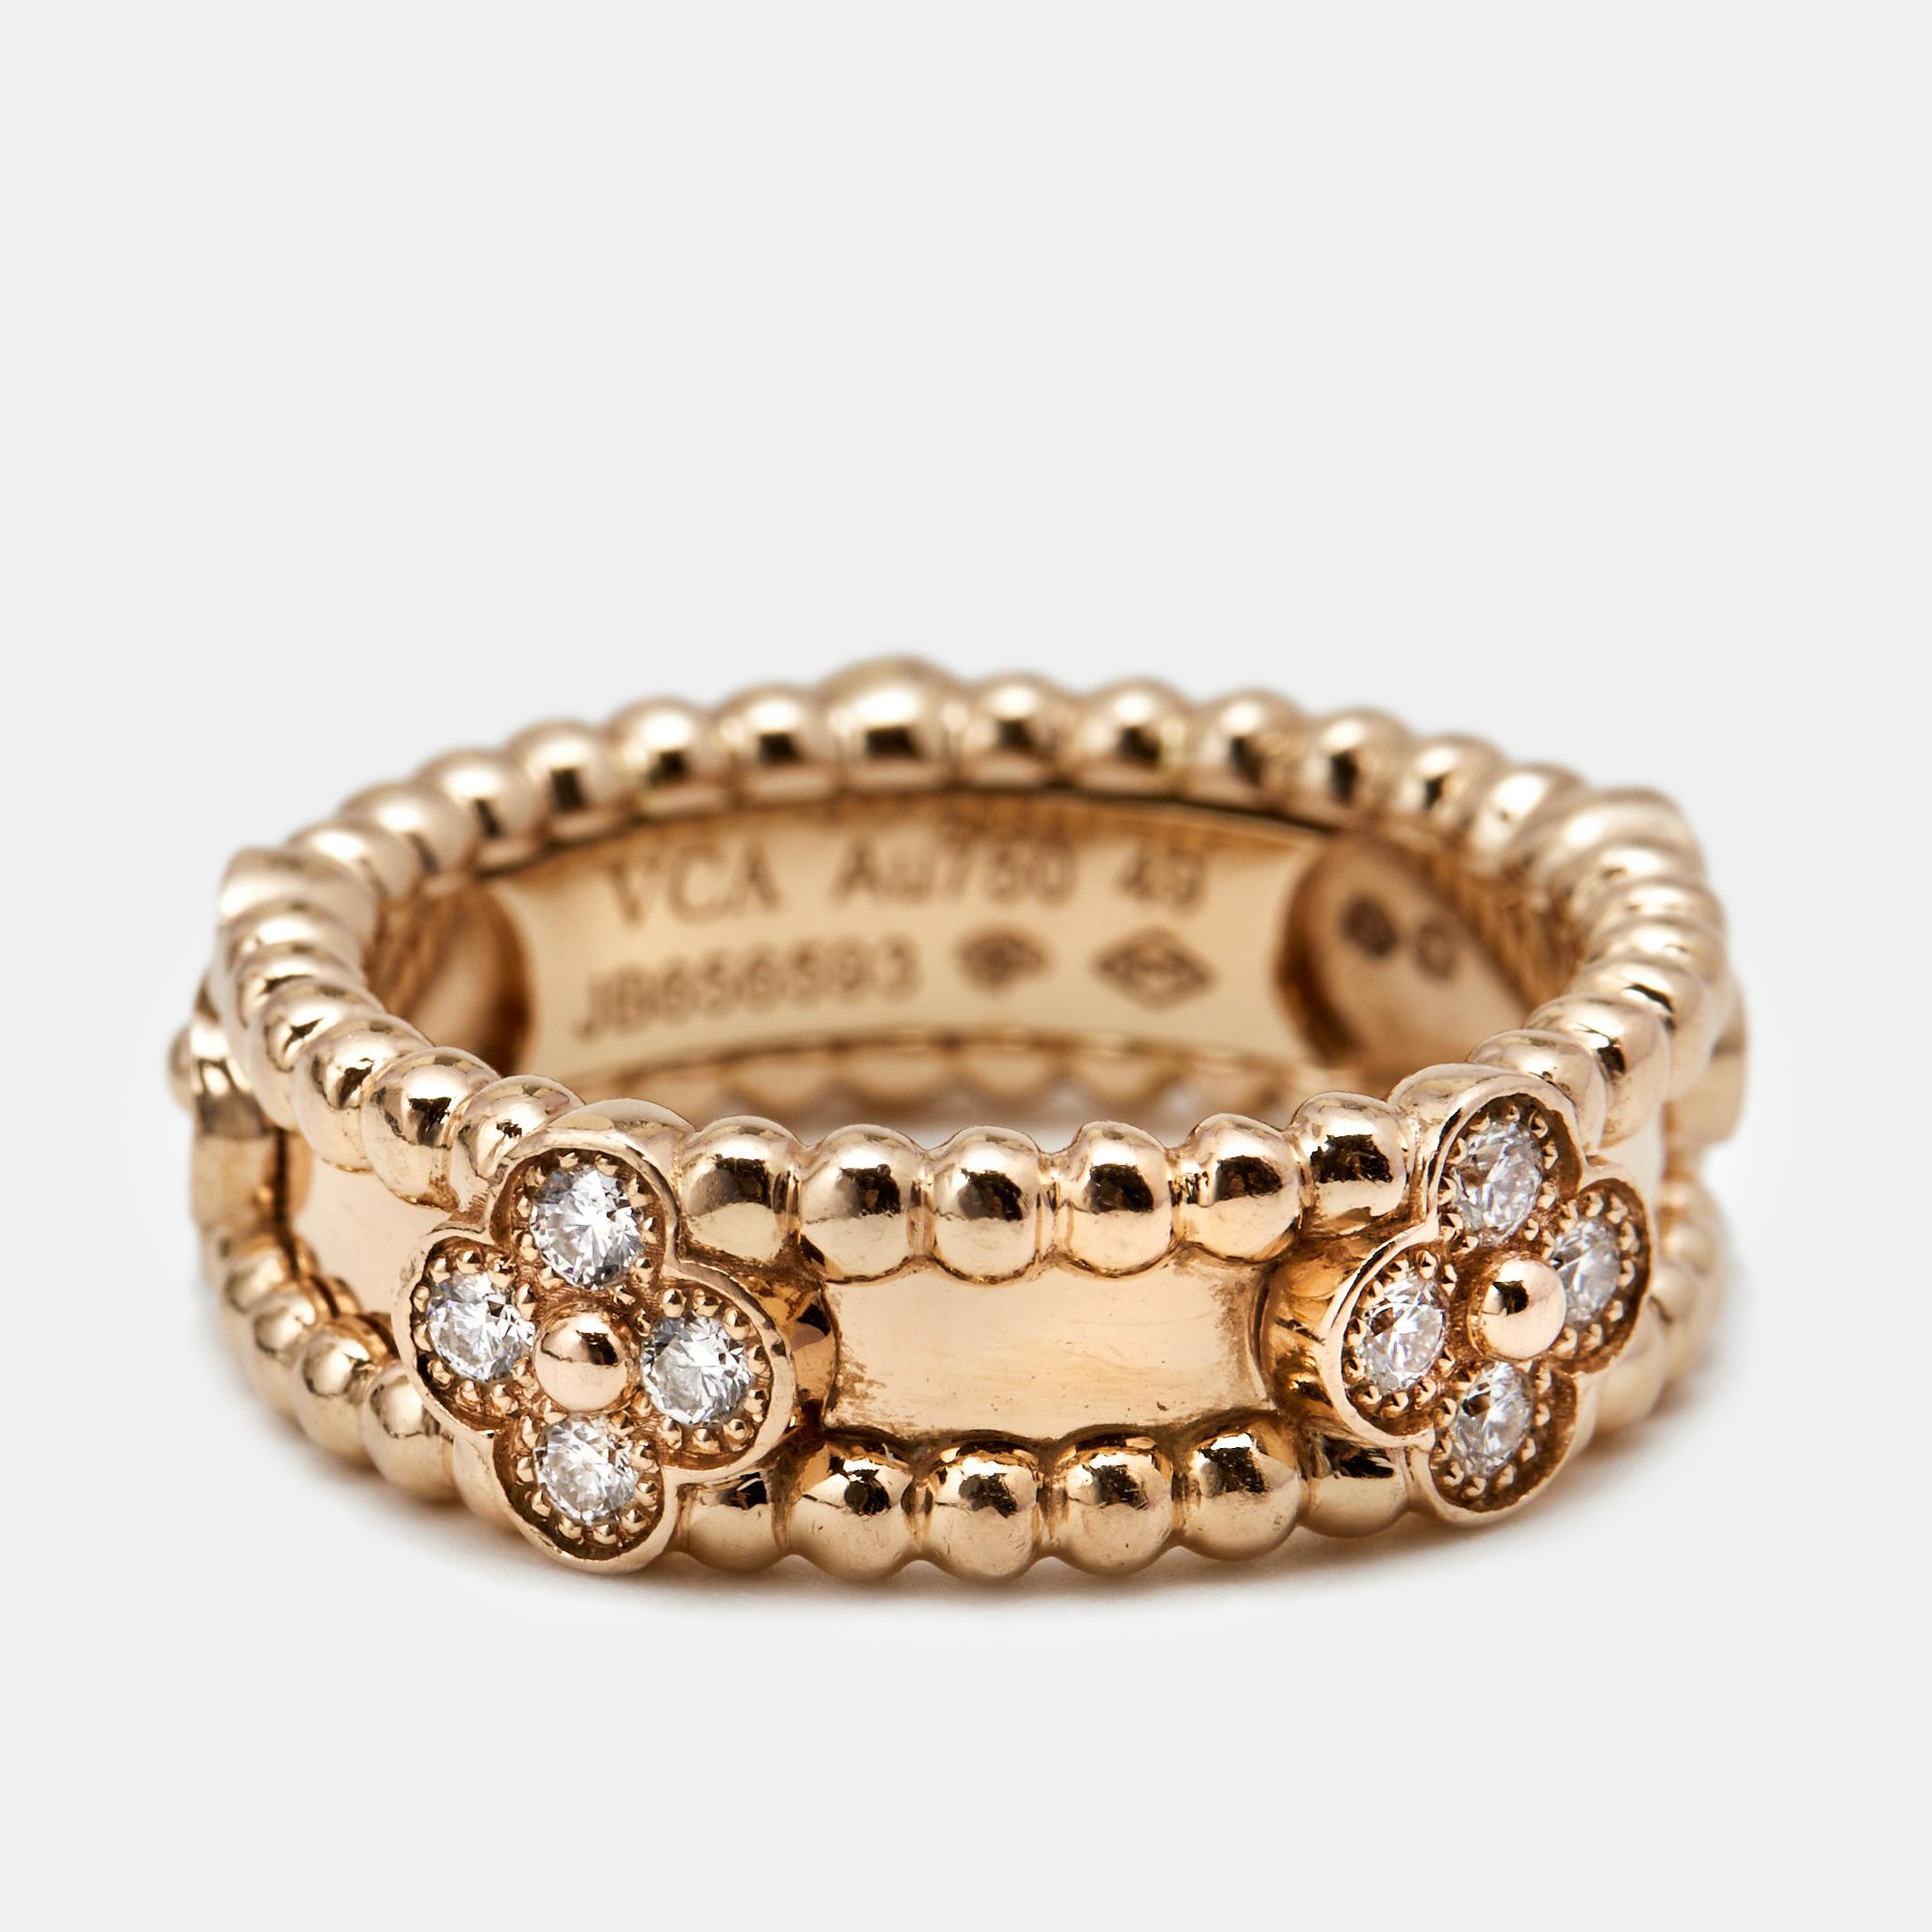 Cette bague Van Cleef & Arpels Perlée Sweet Clovers est un bel exemple des prouesses de VC en matière de joaillerie. Il est sculpté dans de l'or rose 18 carats et orné de rangées de perles Perlées et de motifs de trèfles sertis de diamants. Le bijou